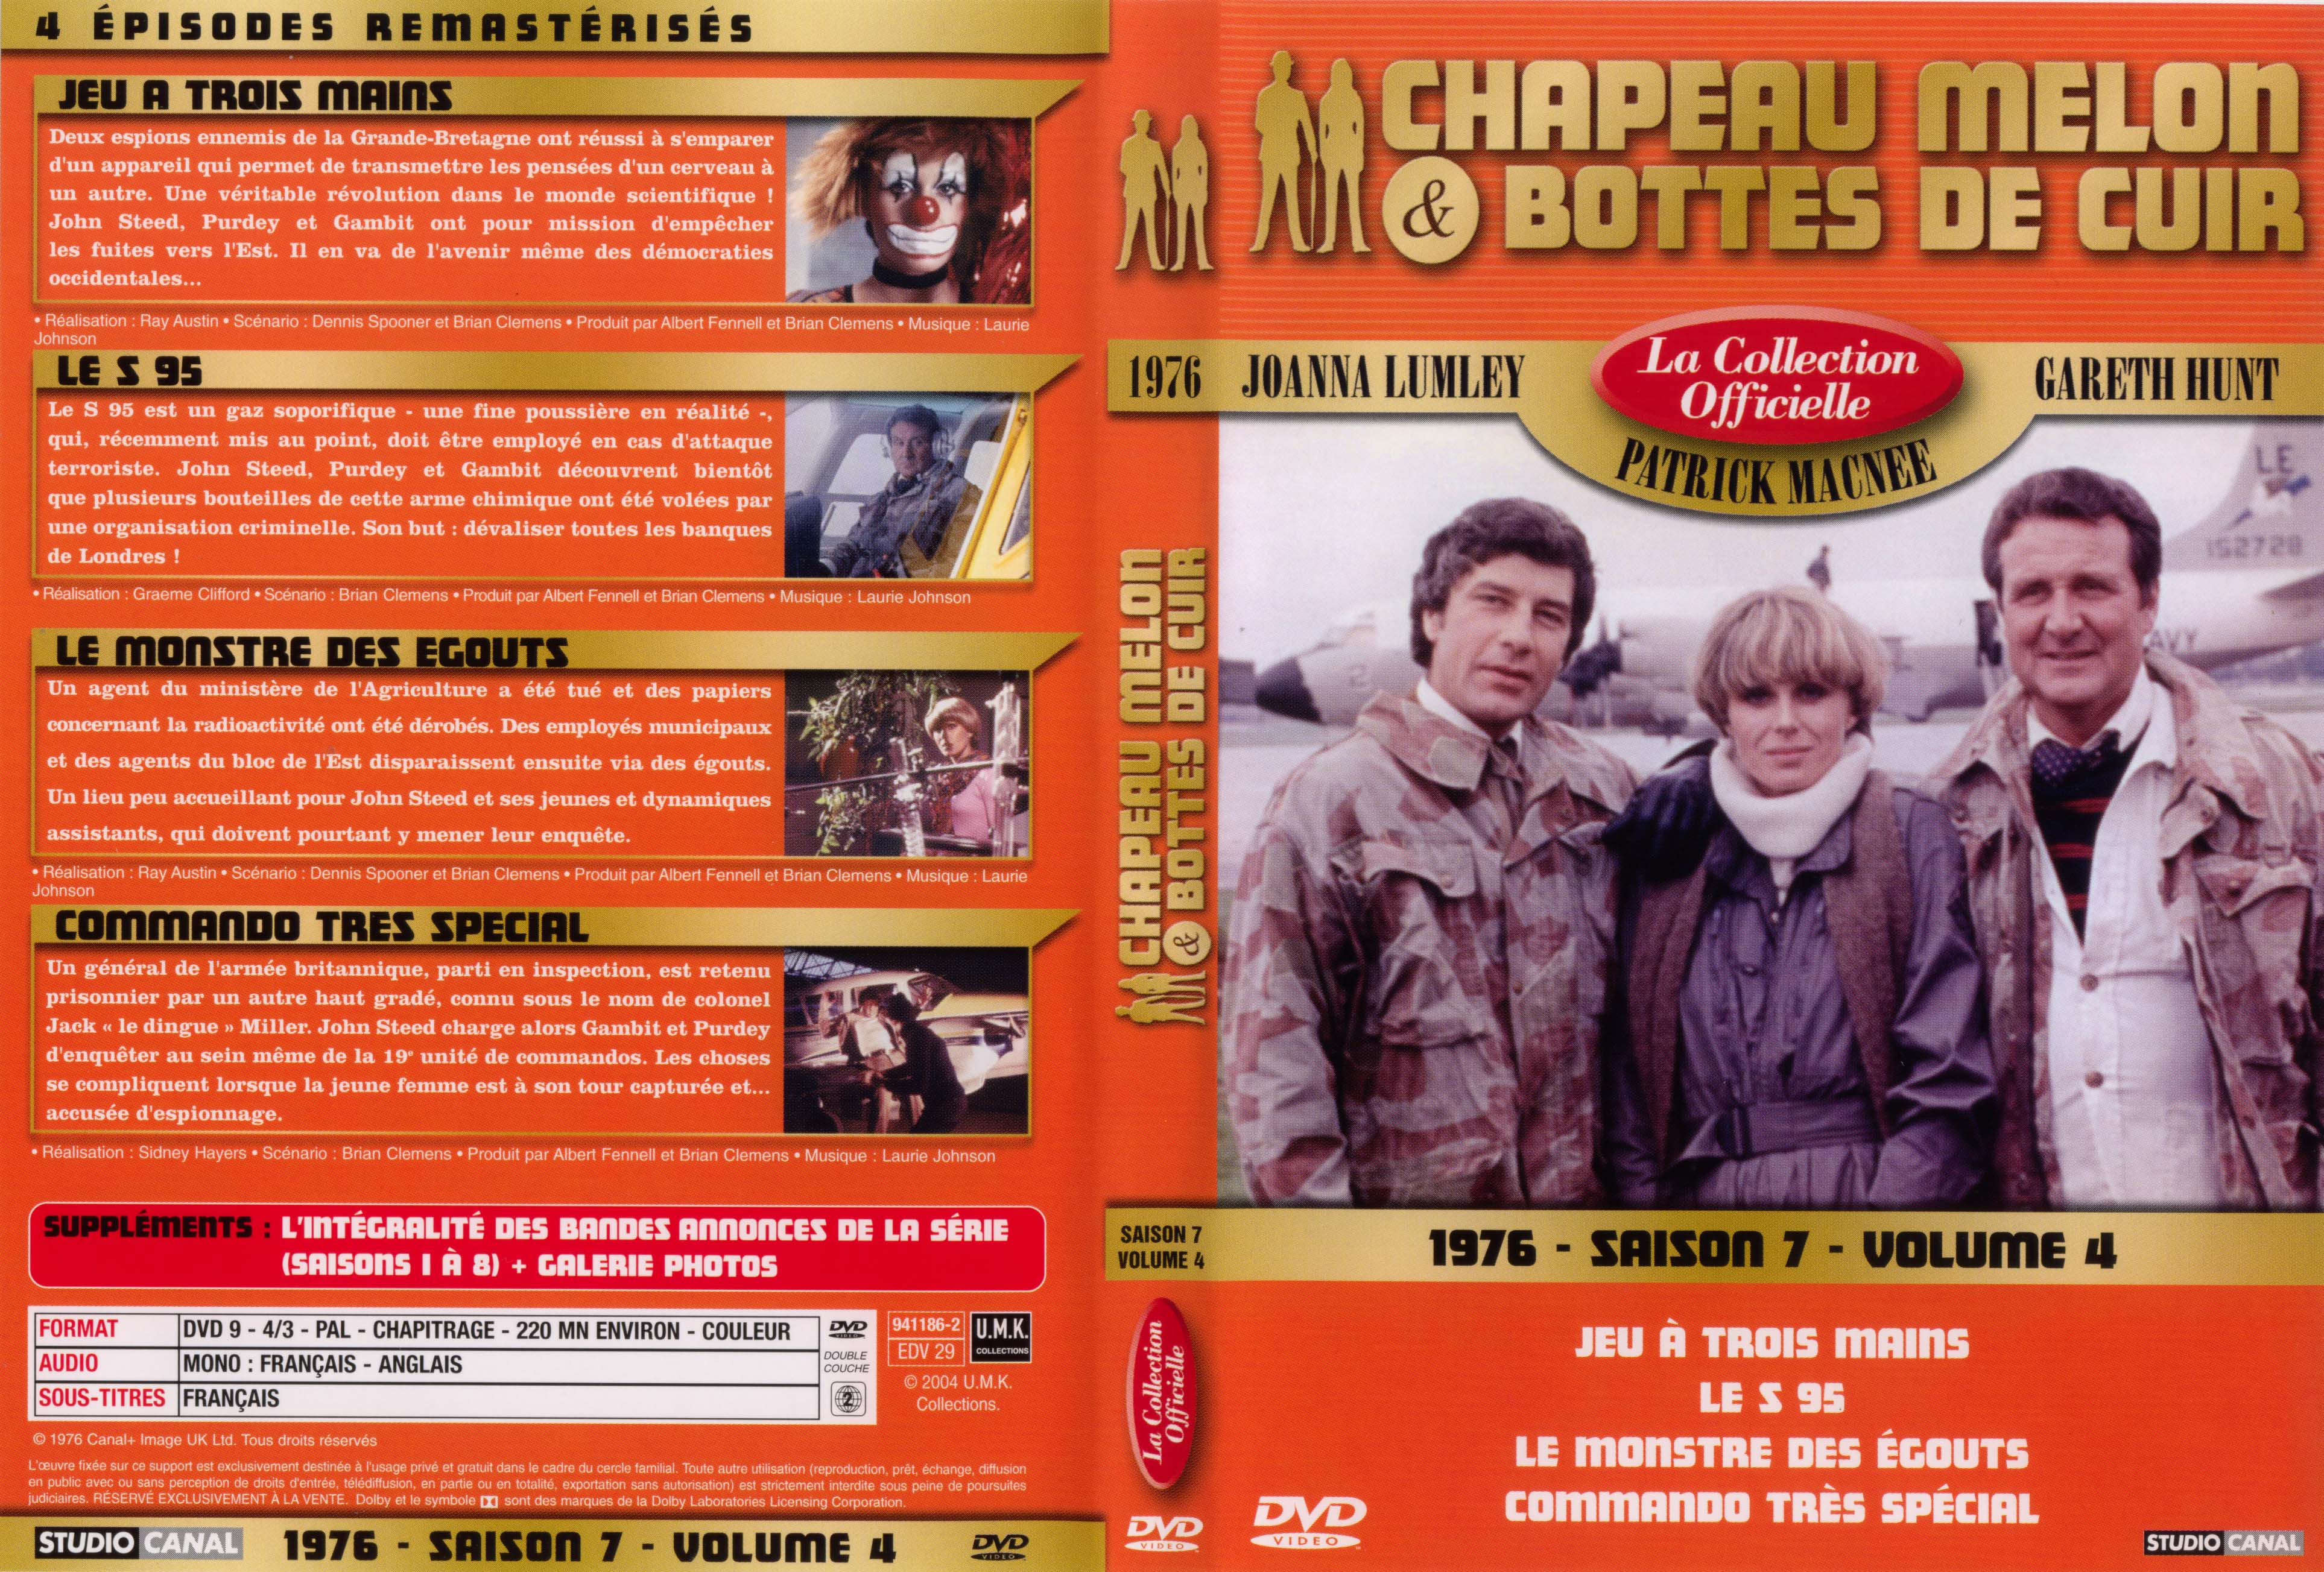 Jaquette DVD Chapeau melon et bottes de cuir 1976 saison 7 vol 4